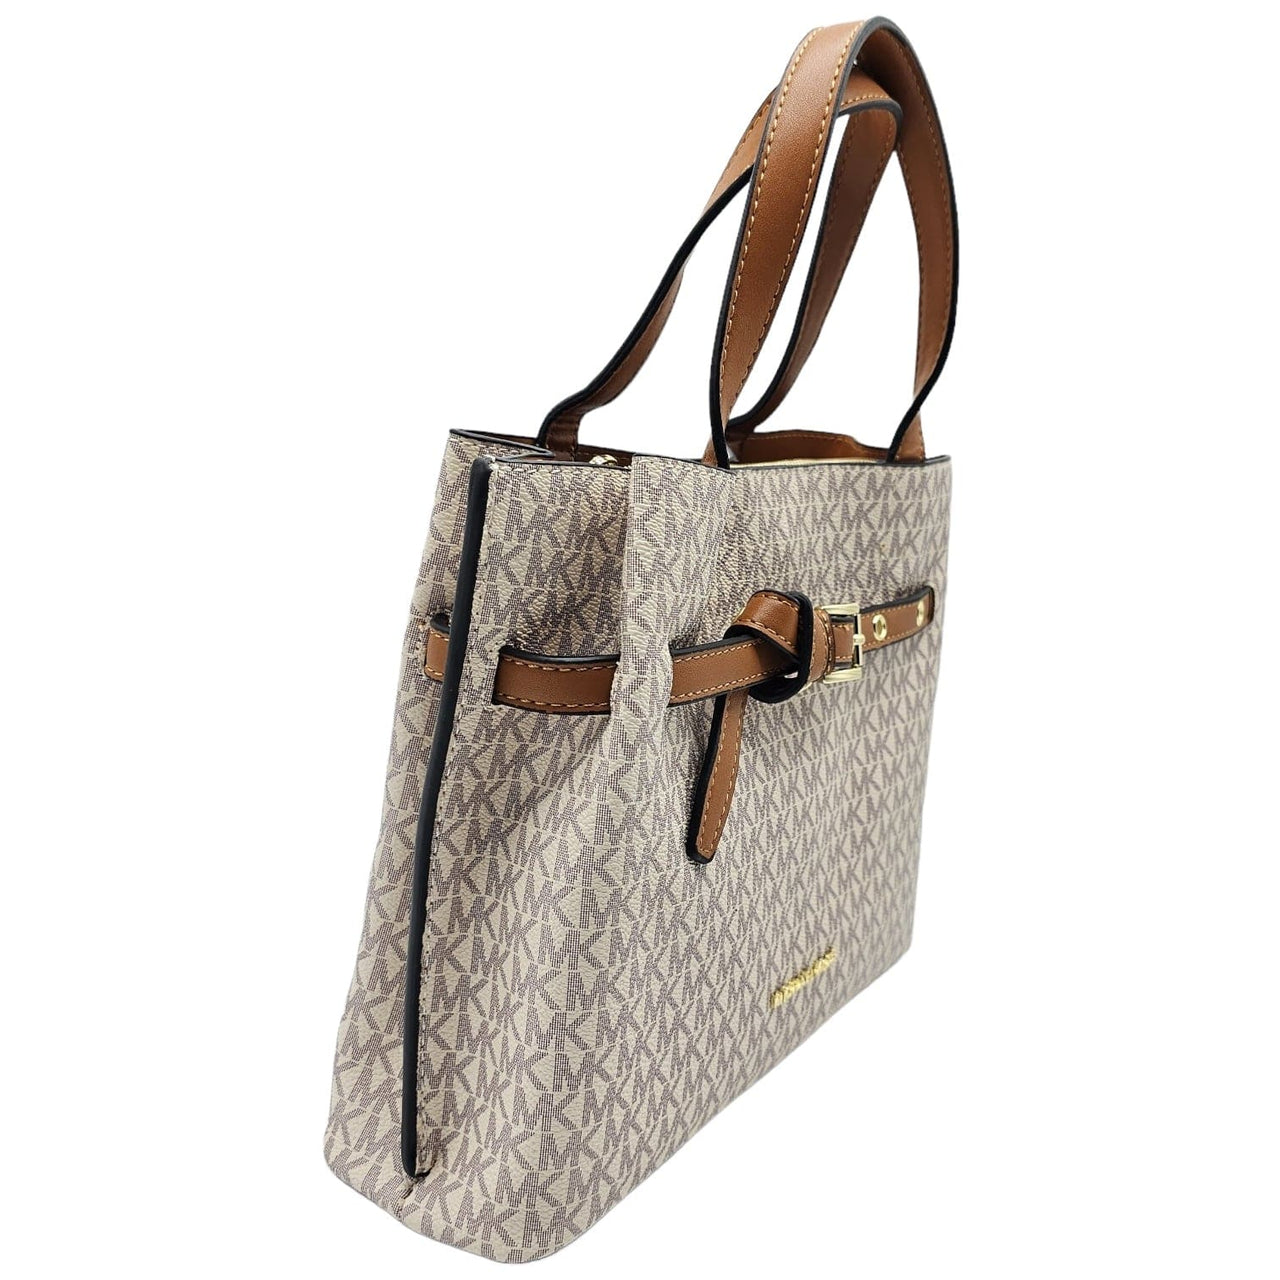 The Bag Couture Handbags, Wallets & Cases Michael Kors Emilia Small Logo Satchel Crossbody/Handbag Beige